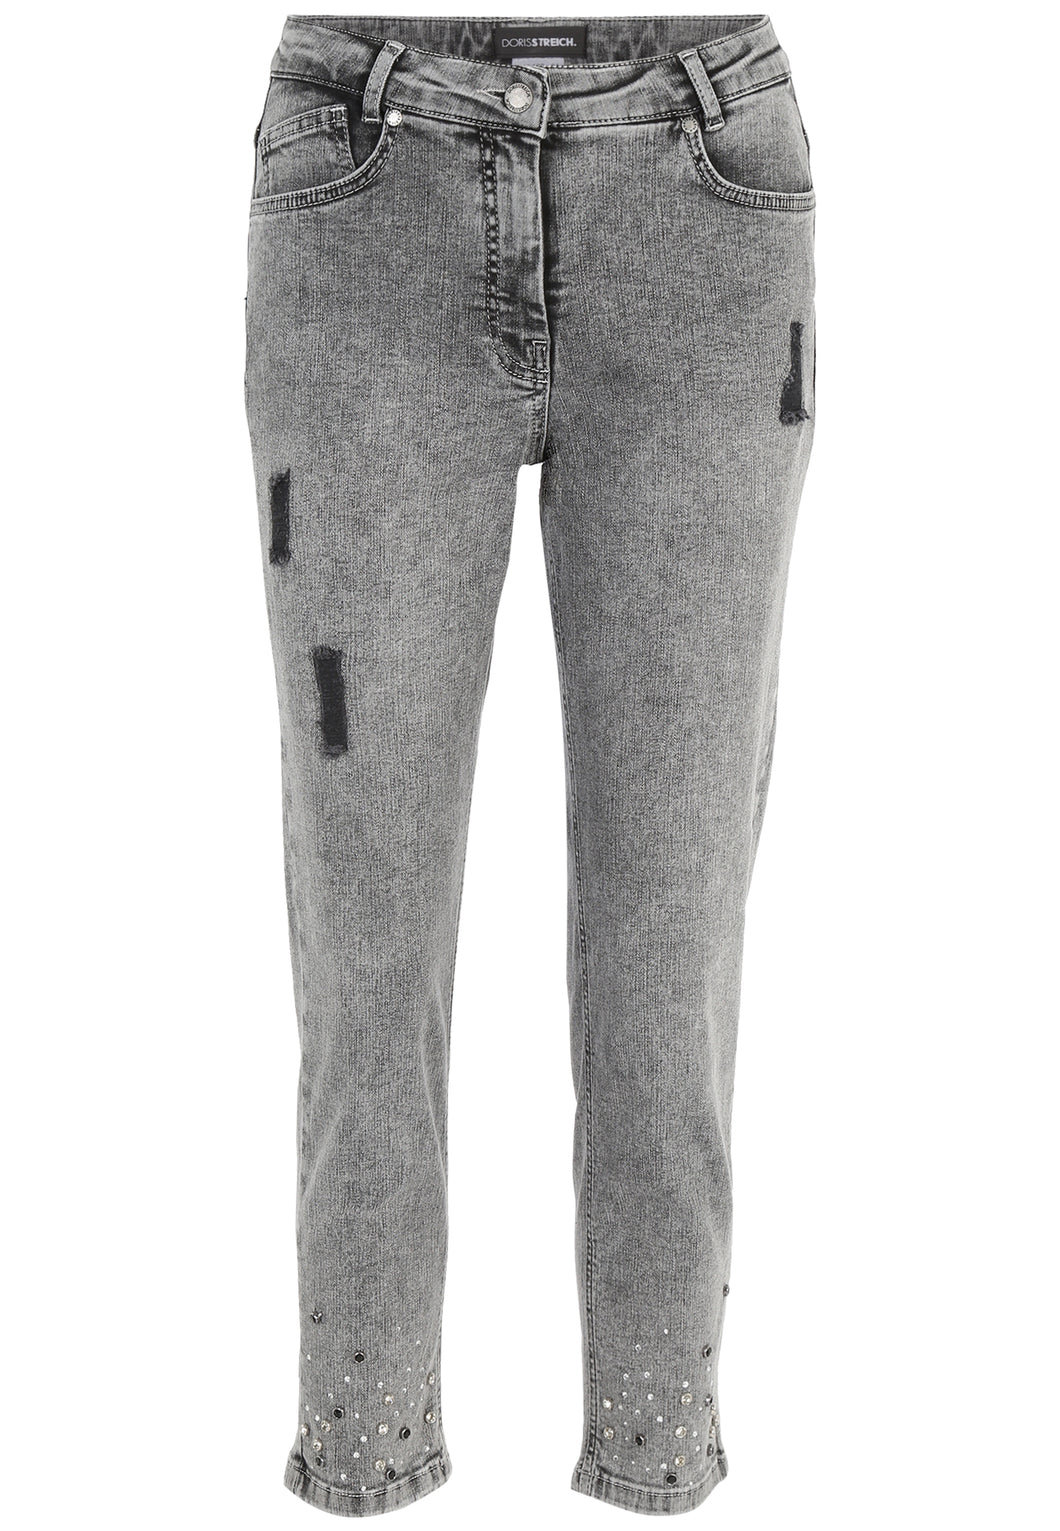 Doris Streich 5-Pocket Jeans Hose in Grau mit Strass-Steinchen Gr. 44 - 52